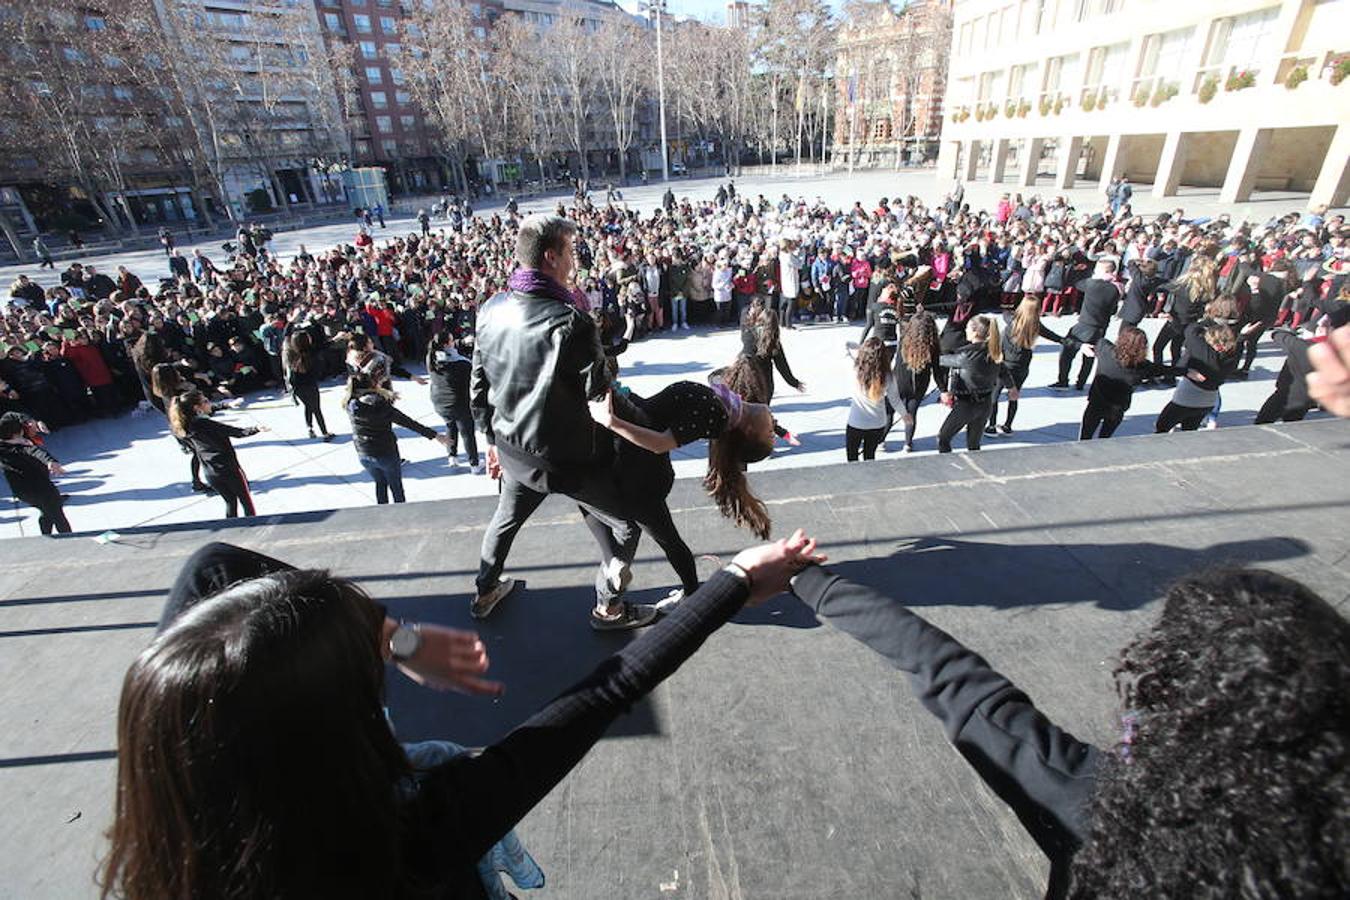 Casi un millar de escolares de nueve colegios logroñeses han participado hoy en una escenificación, en la plaza del Ayuntamiento de la capital riojana, para fomentar la tolerancia y la convivencia, durante la celebración del Día de la Paz y la No Violencia, bajo el lema "Convive Logroño".